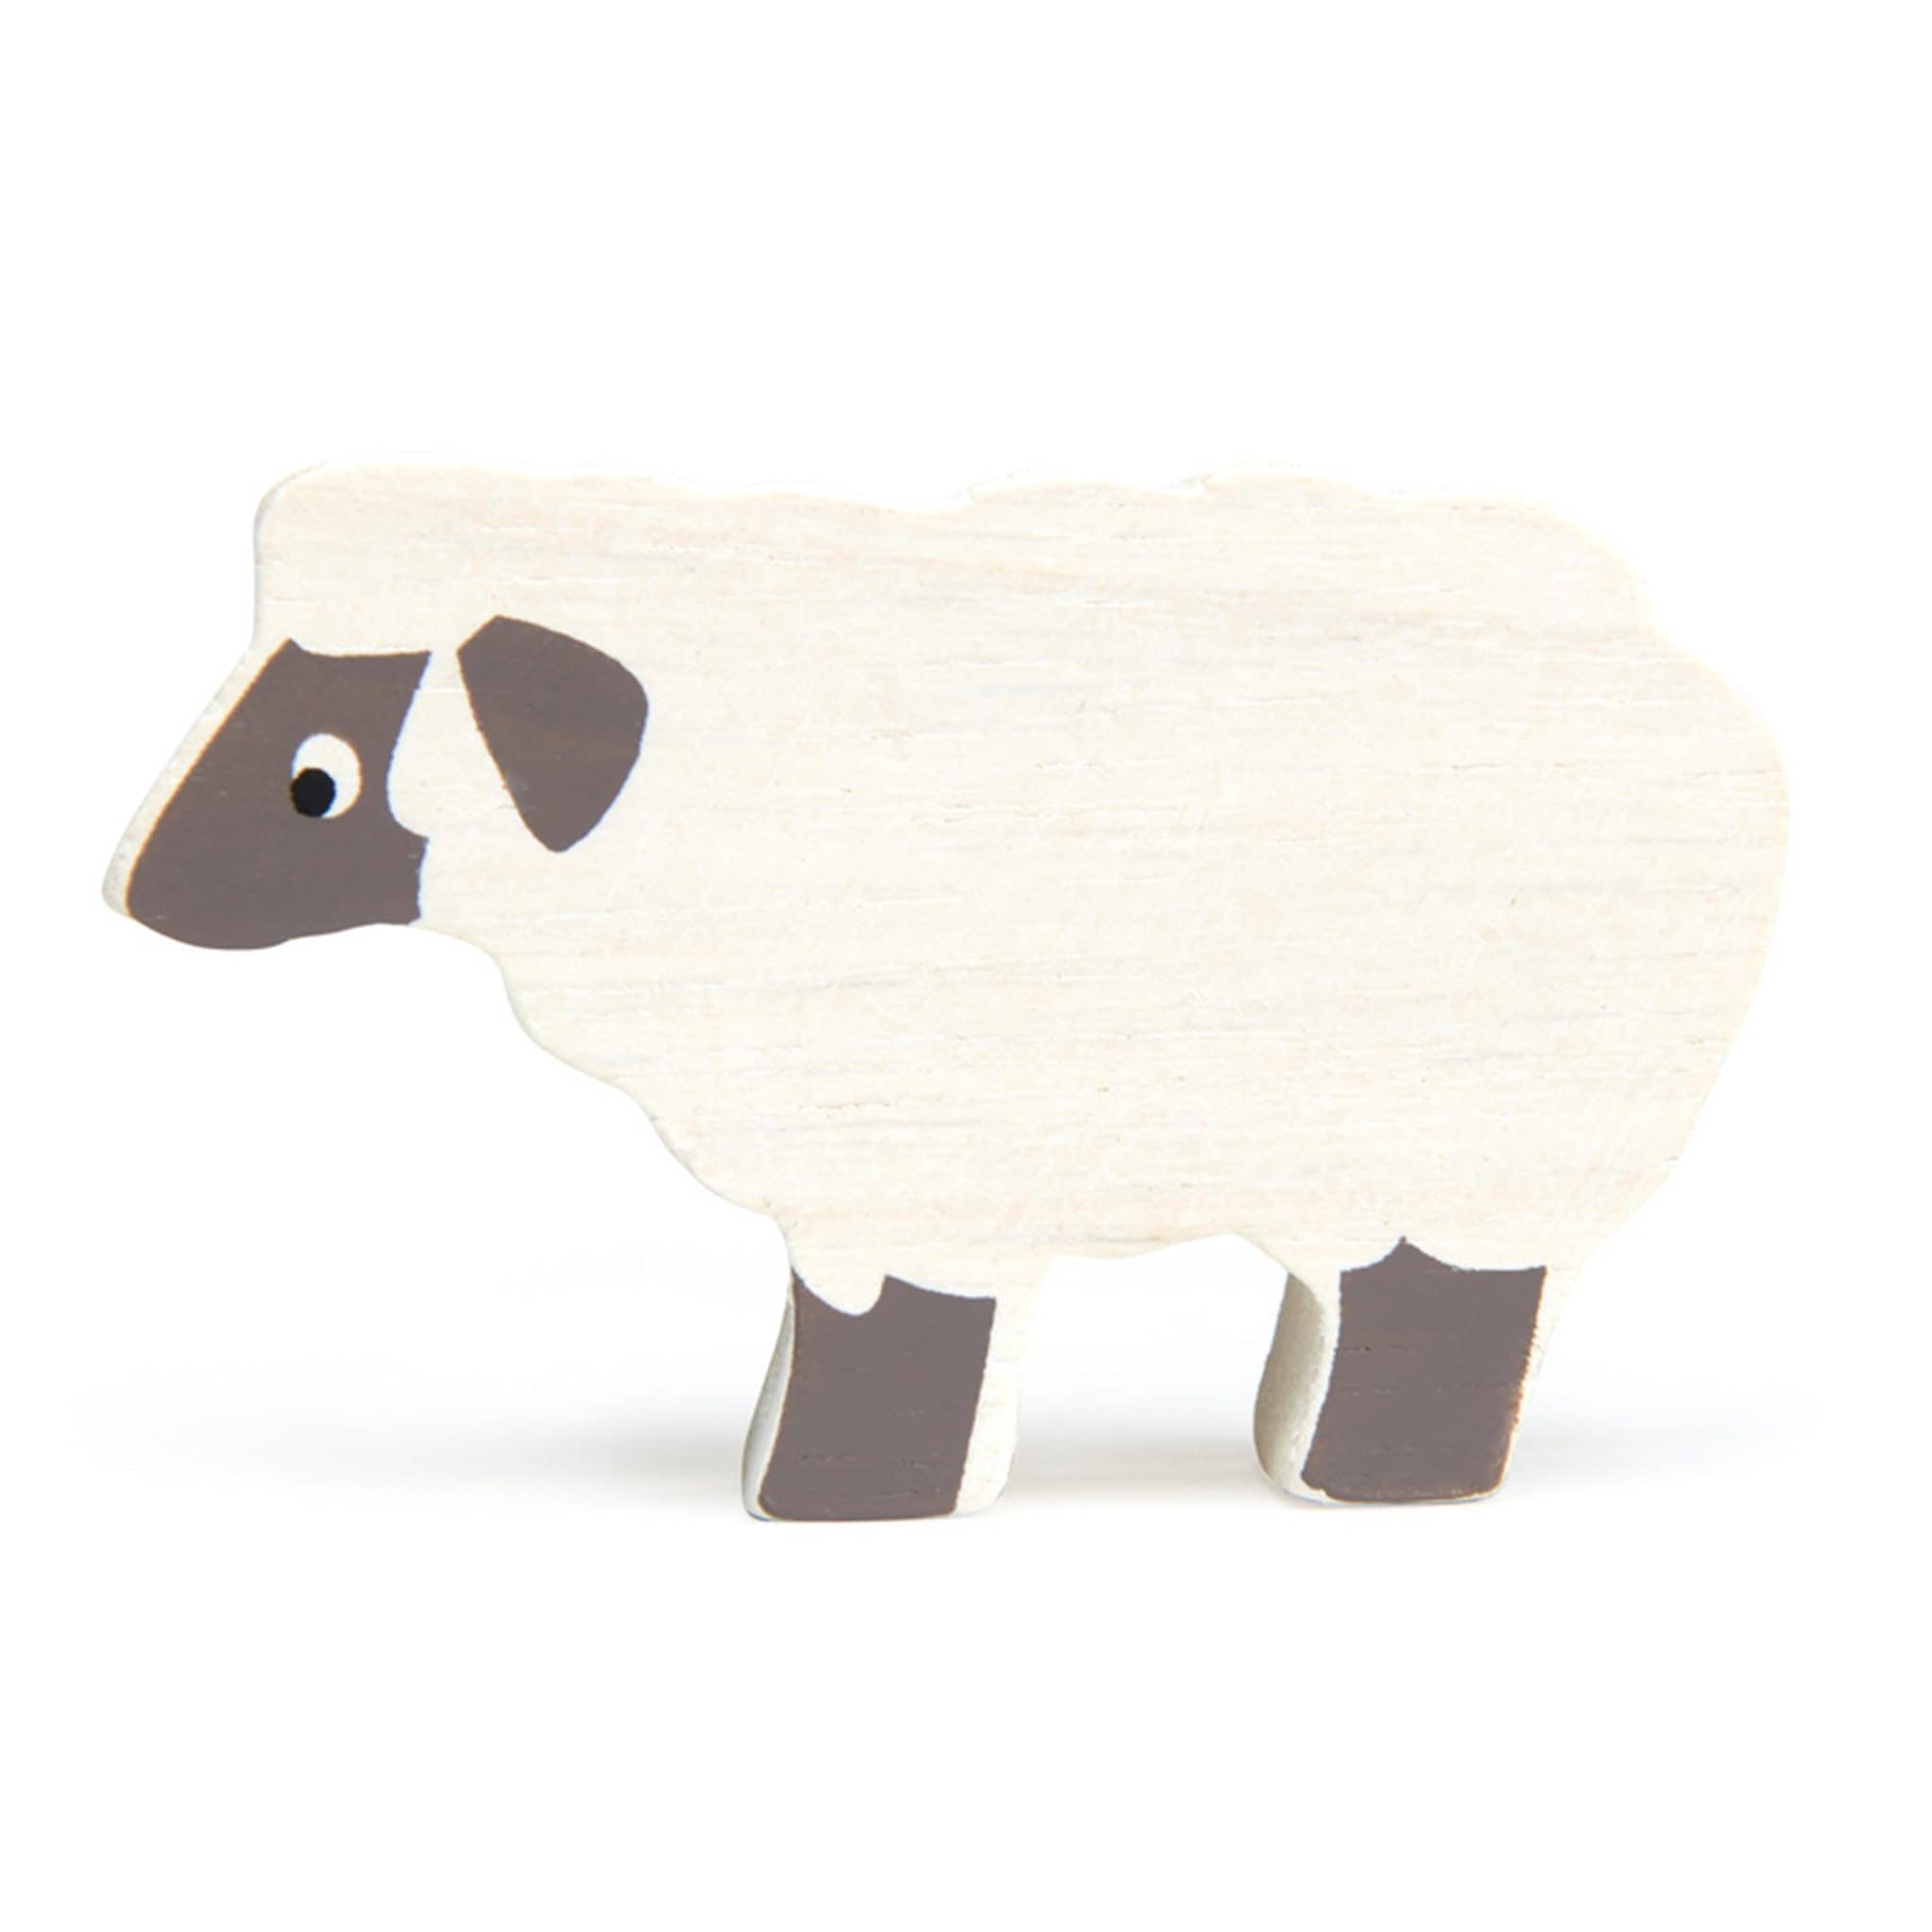 Sheep Wooden Figure